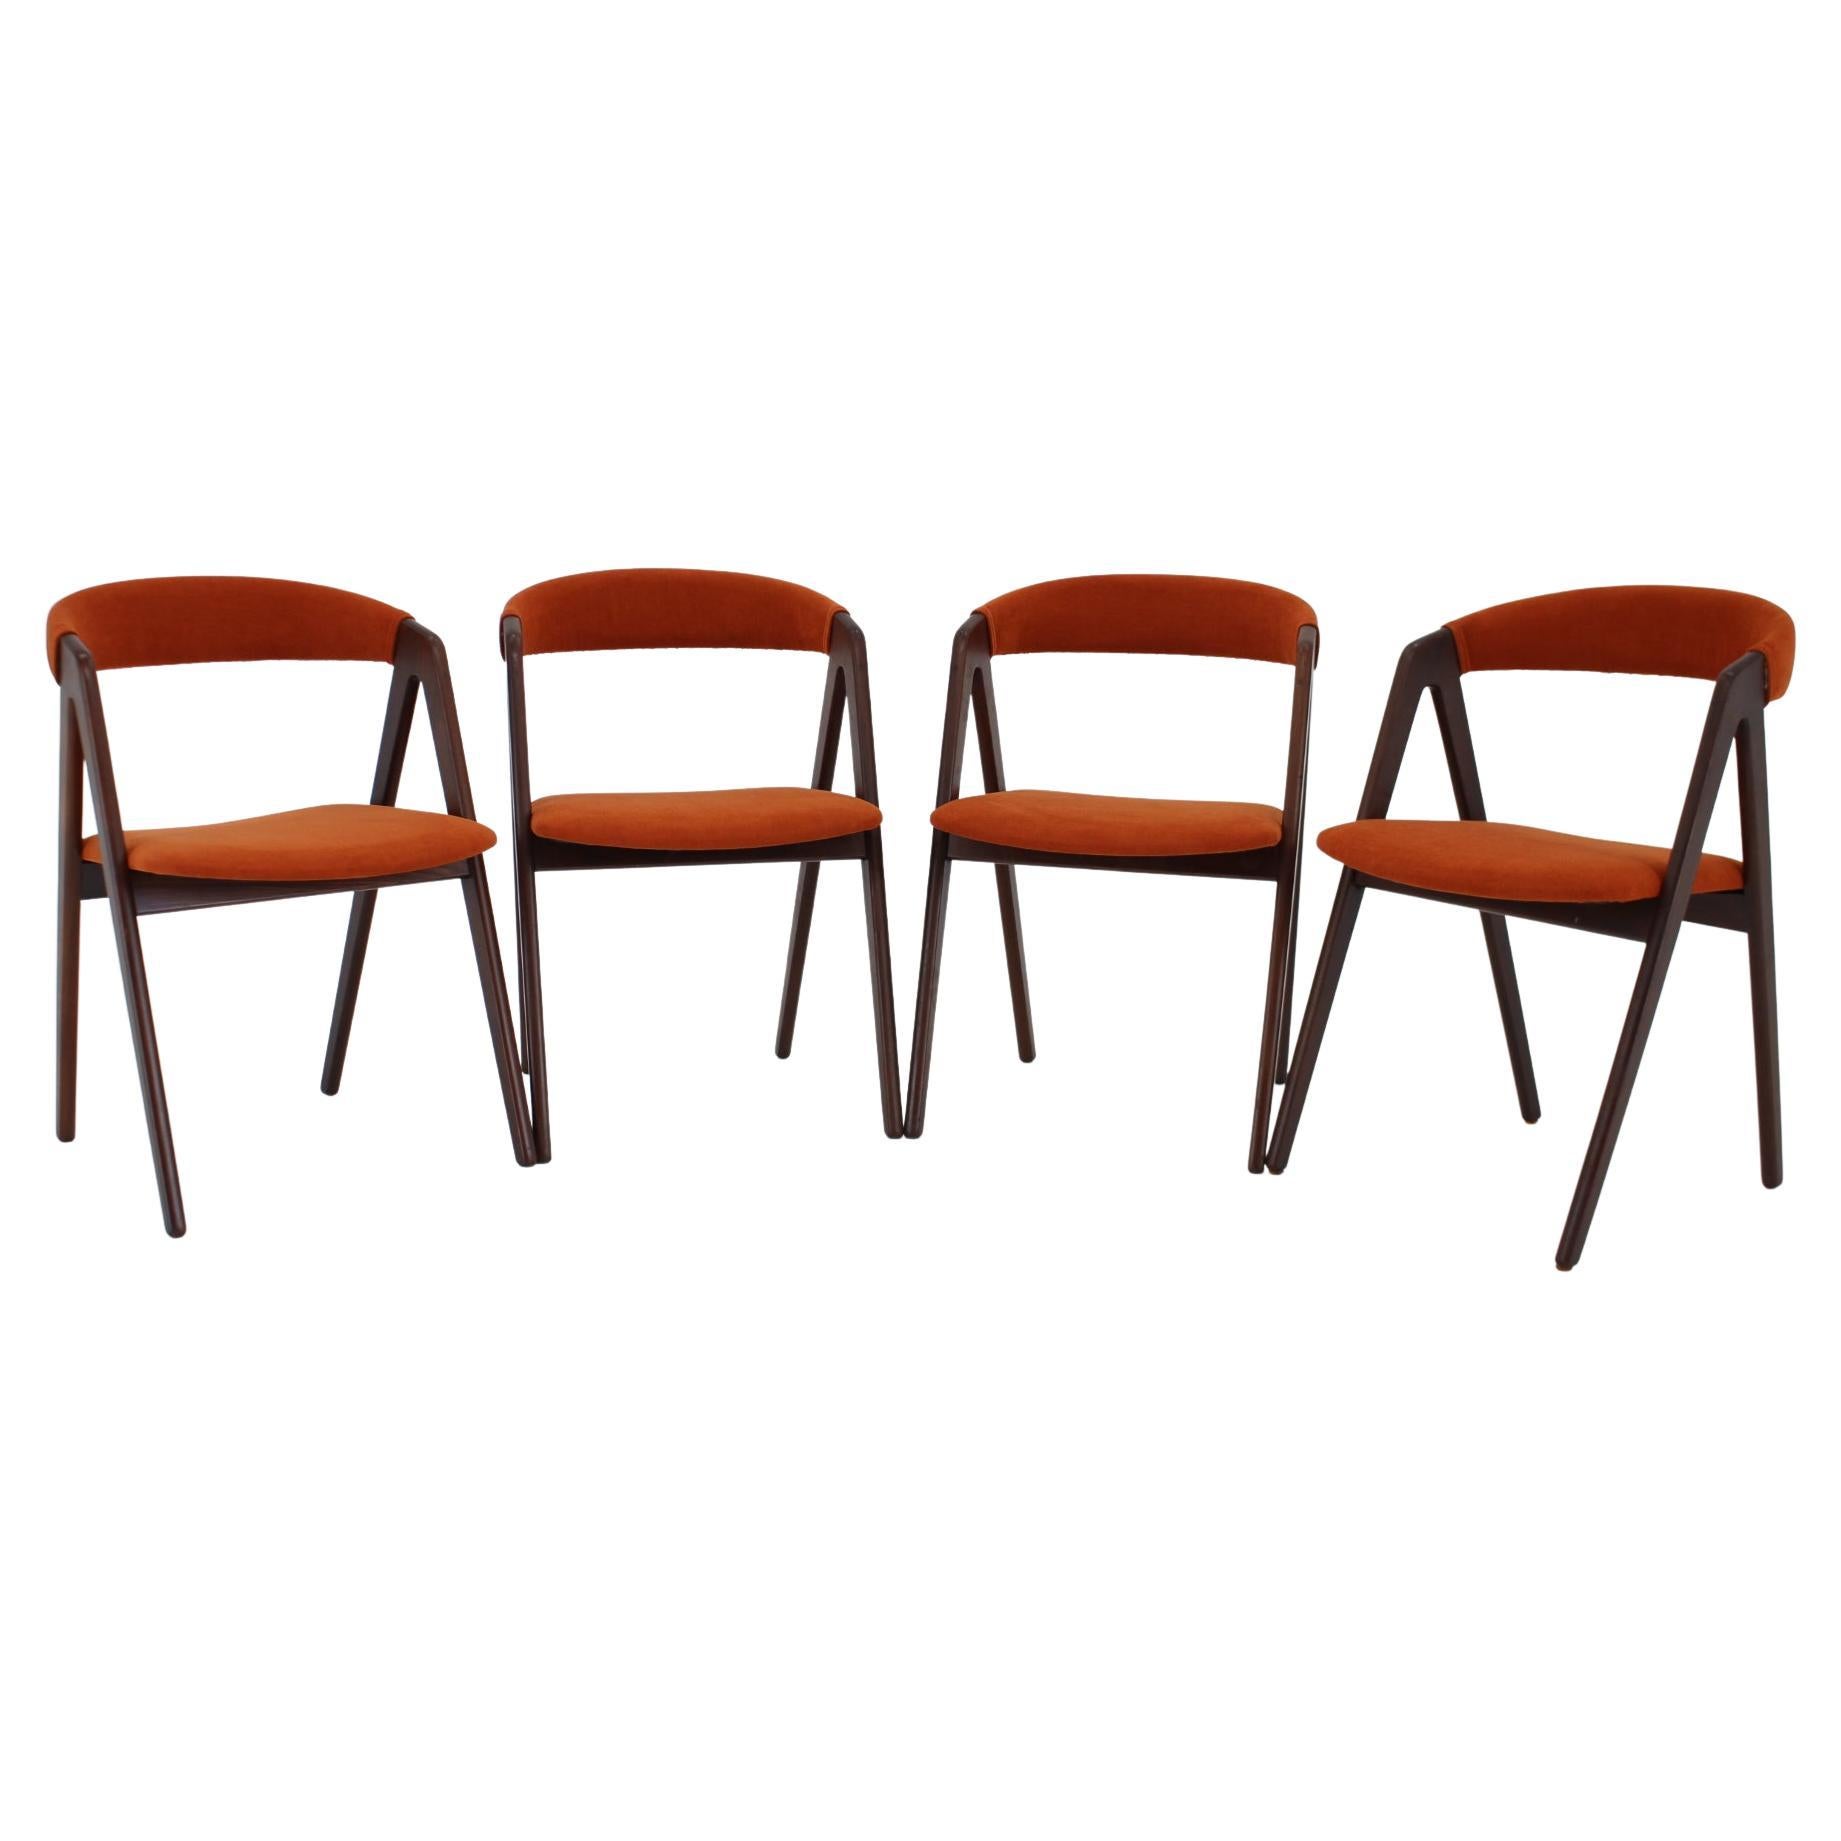 1960s, Kai Kristiansen Teak Compass Dining Chairs, Denmark